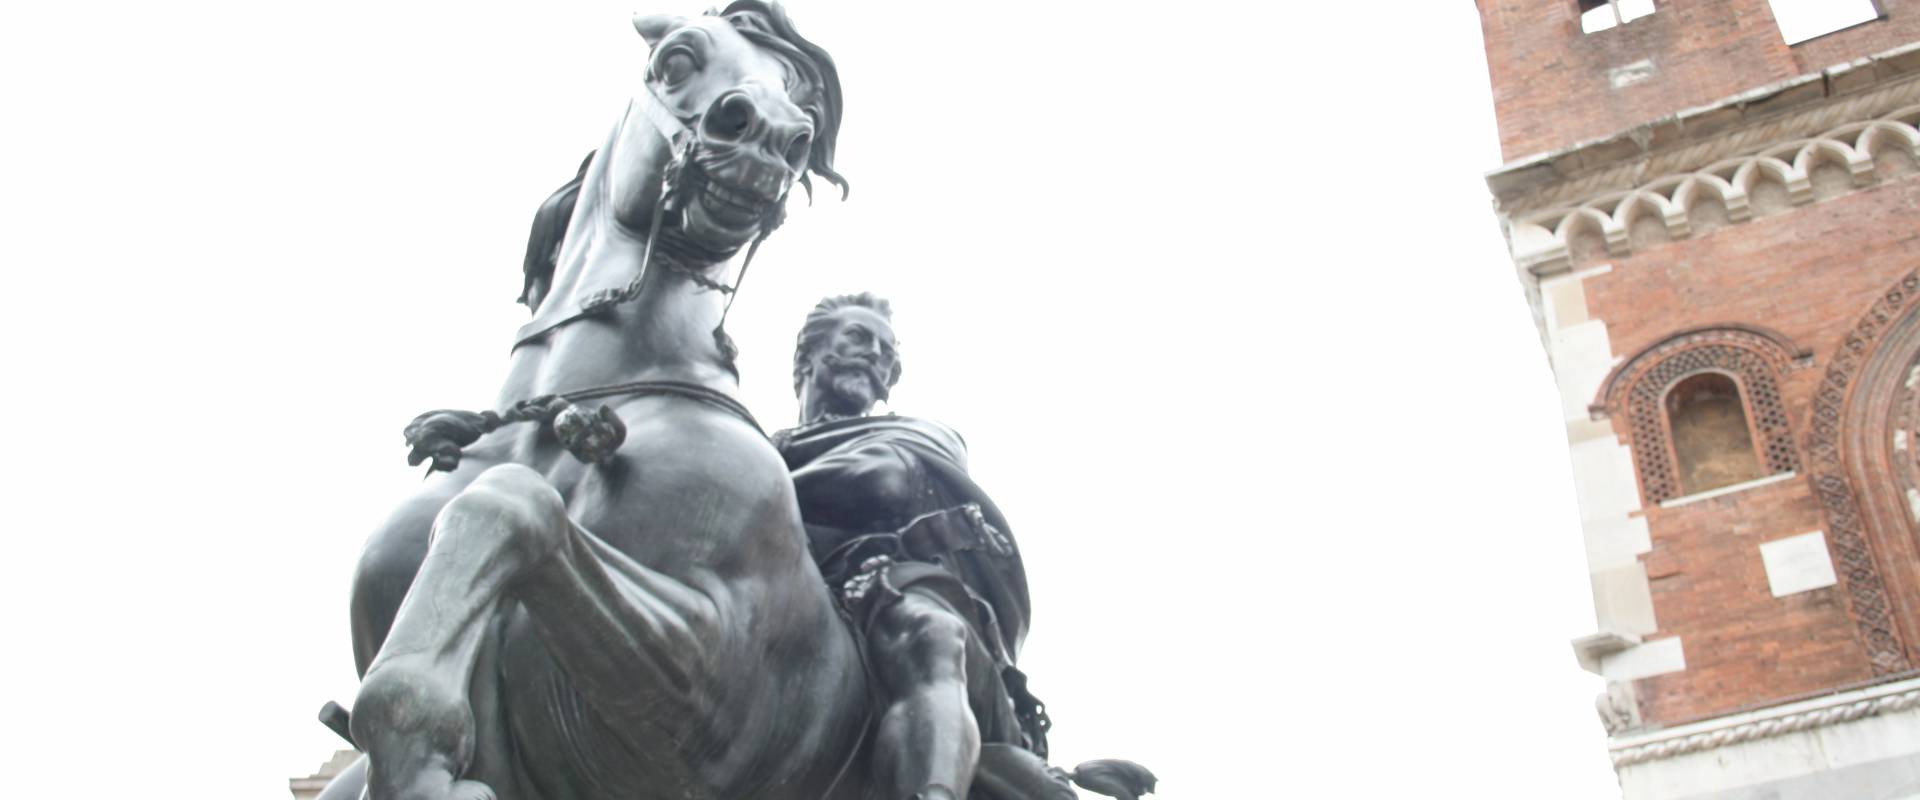 Statua equestri in piazza Cavalli foto di Rossellaman